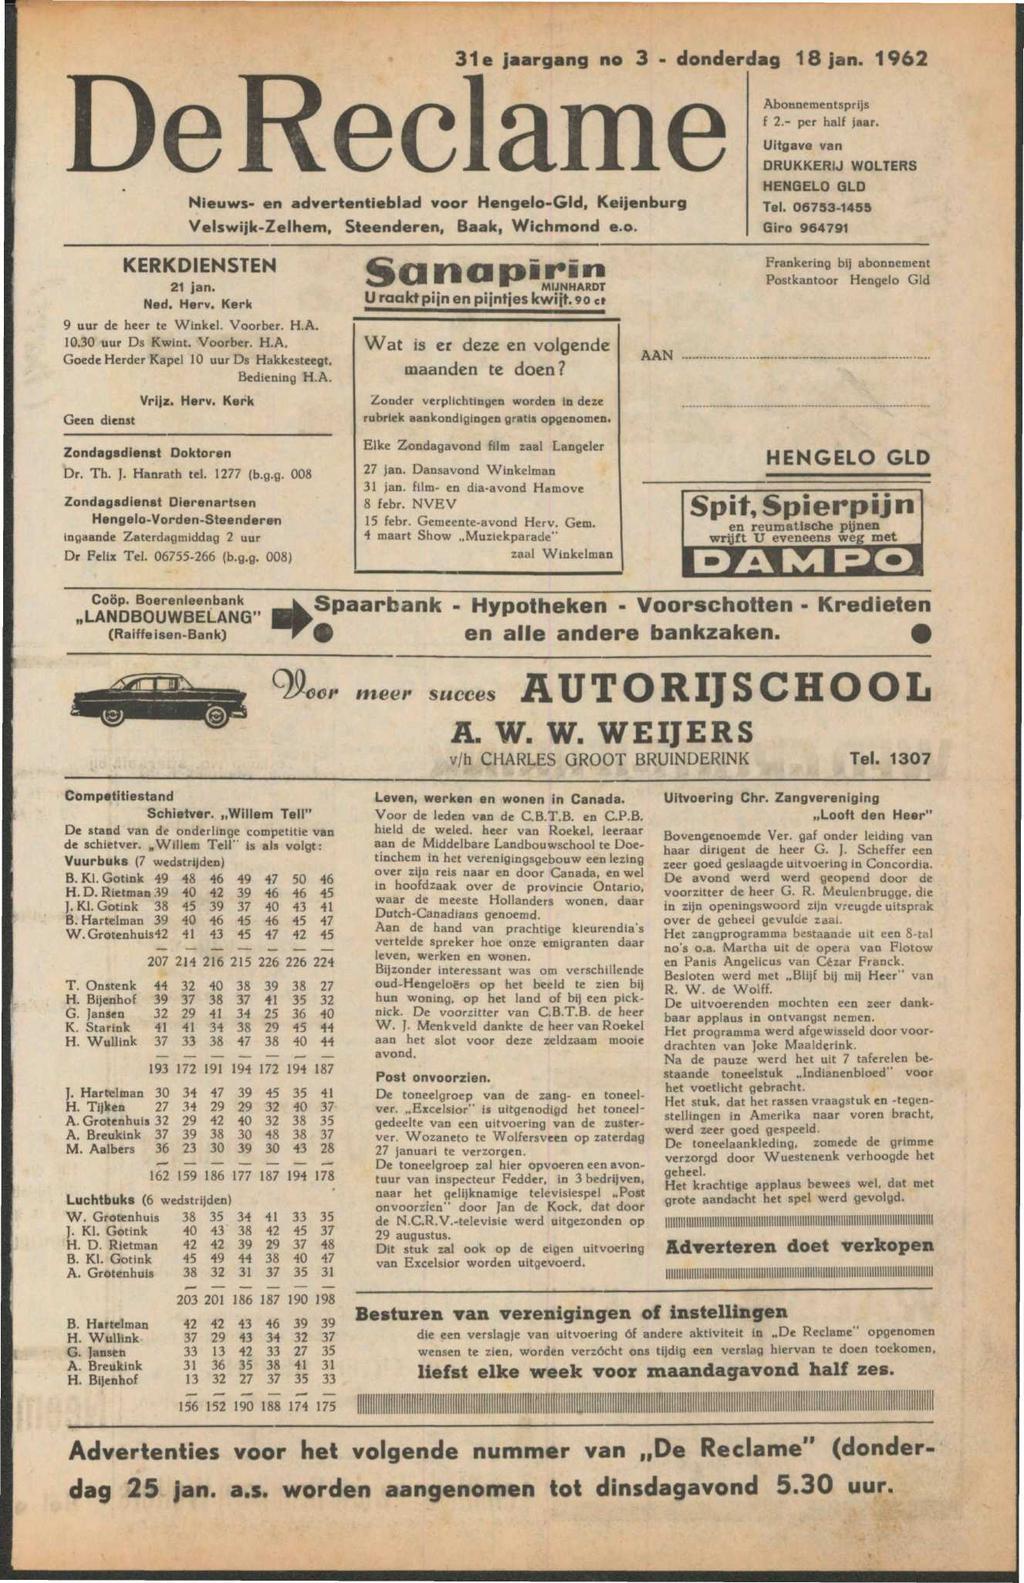 De Reclame Nieuws- en advertentieblad voor Hcngelo-Gld, Keijenburg Velswijk-Zelhem, Steenderen, Baak, Wichmond e.o. 31e jaargang no 3 - donderdag 18 jan. 1962 Abonnementsprijs f 2.- per half jaar.